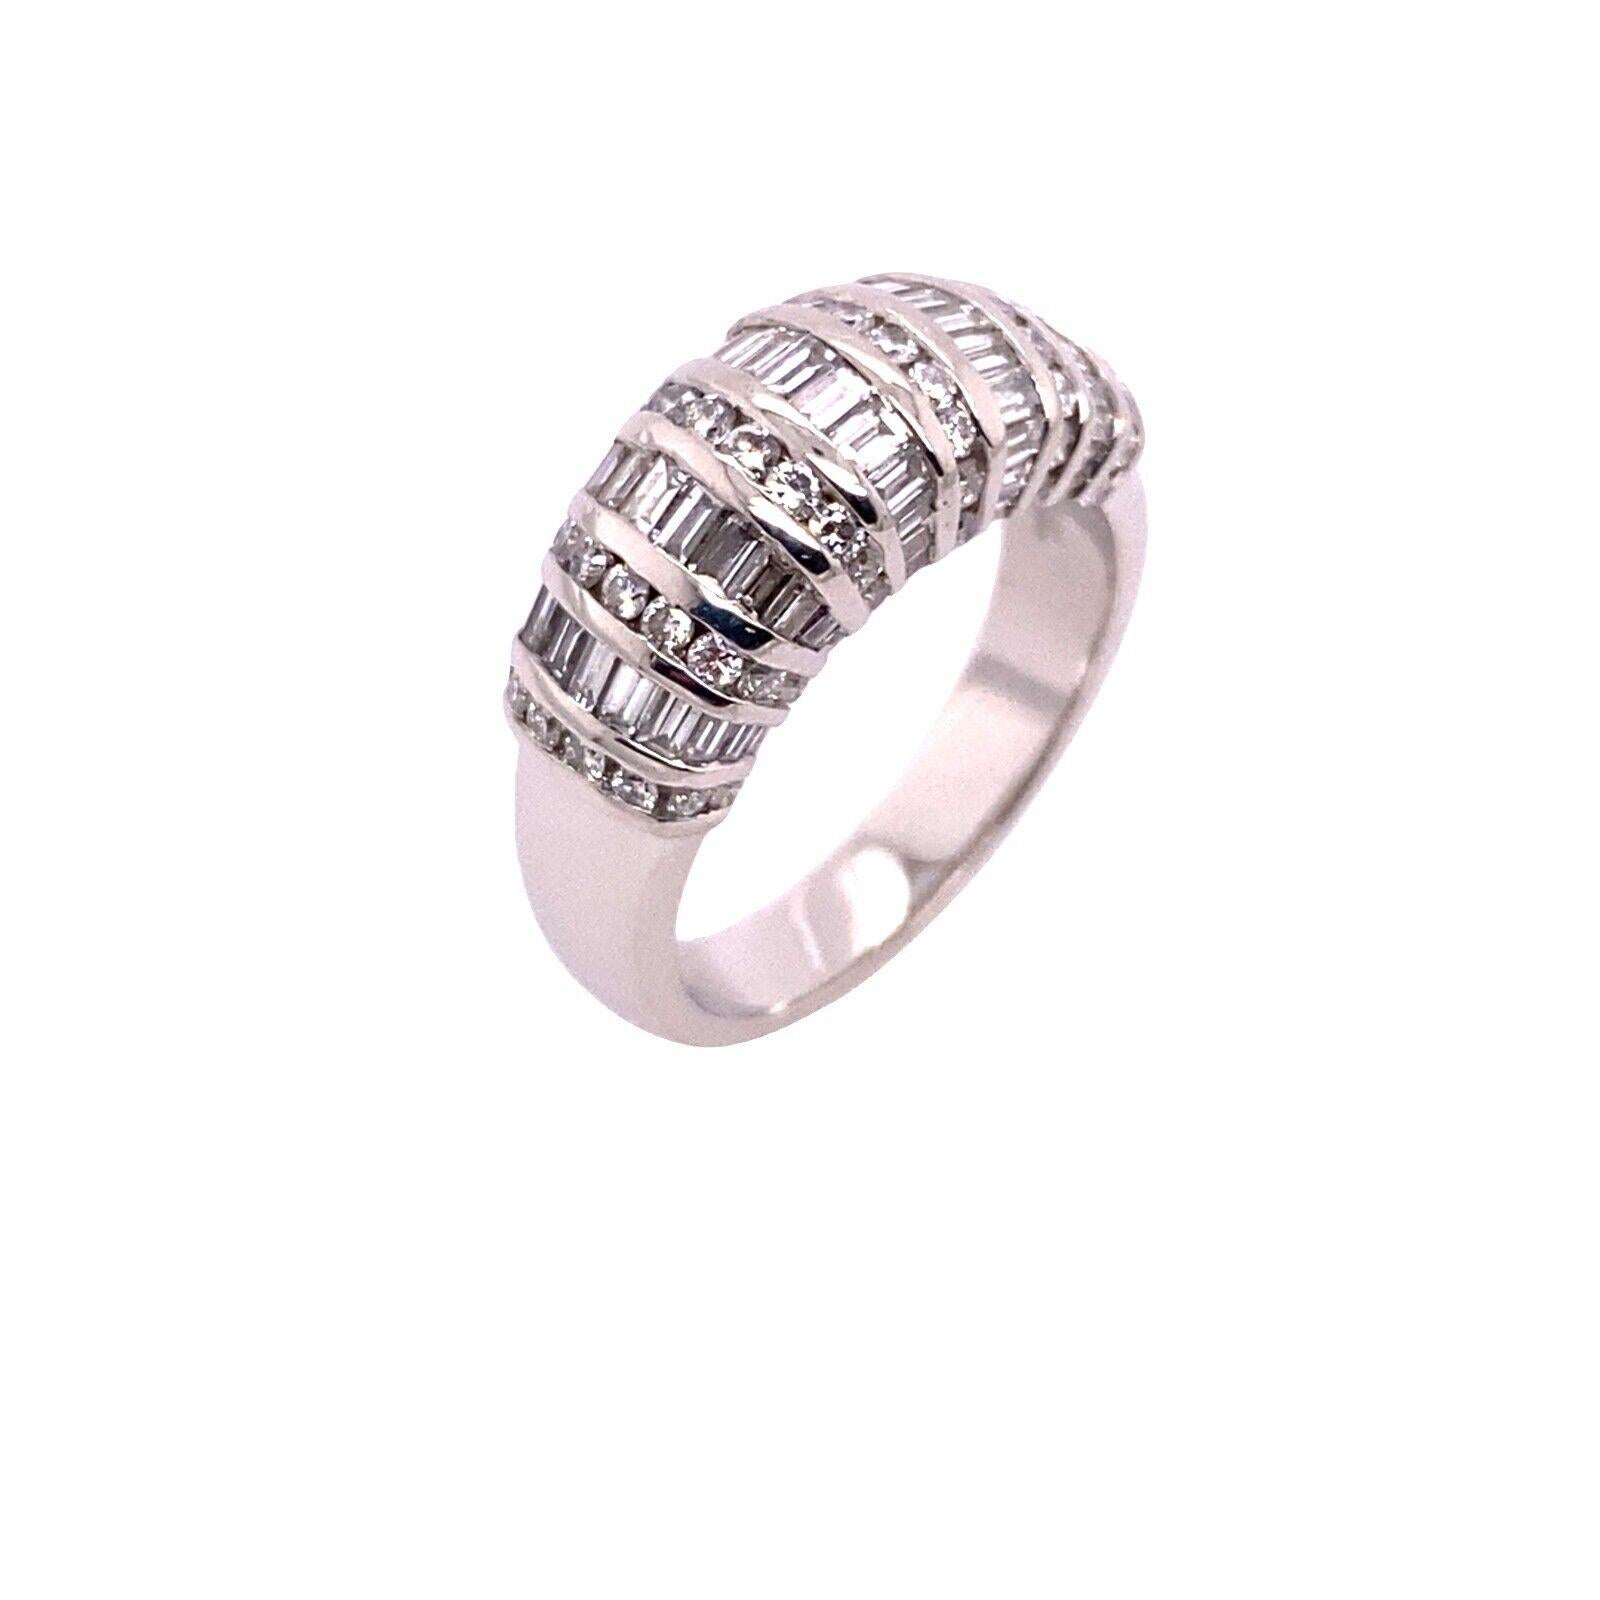 Dieser atemberaubende Diamant-Turbanring ist mit 2,56 ct. Baguette- und runden Diamanten besetzt und mit einem Ringband aus Platin versehen. Die Diamanten werden in einer Reihe angeordnet, um ein Muster zu bilden, das der Form des Rings